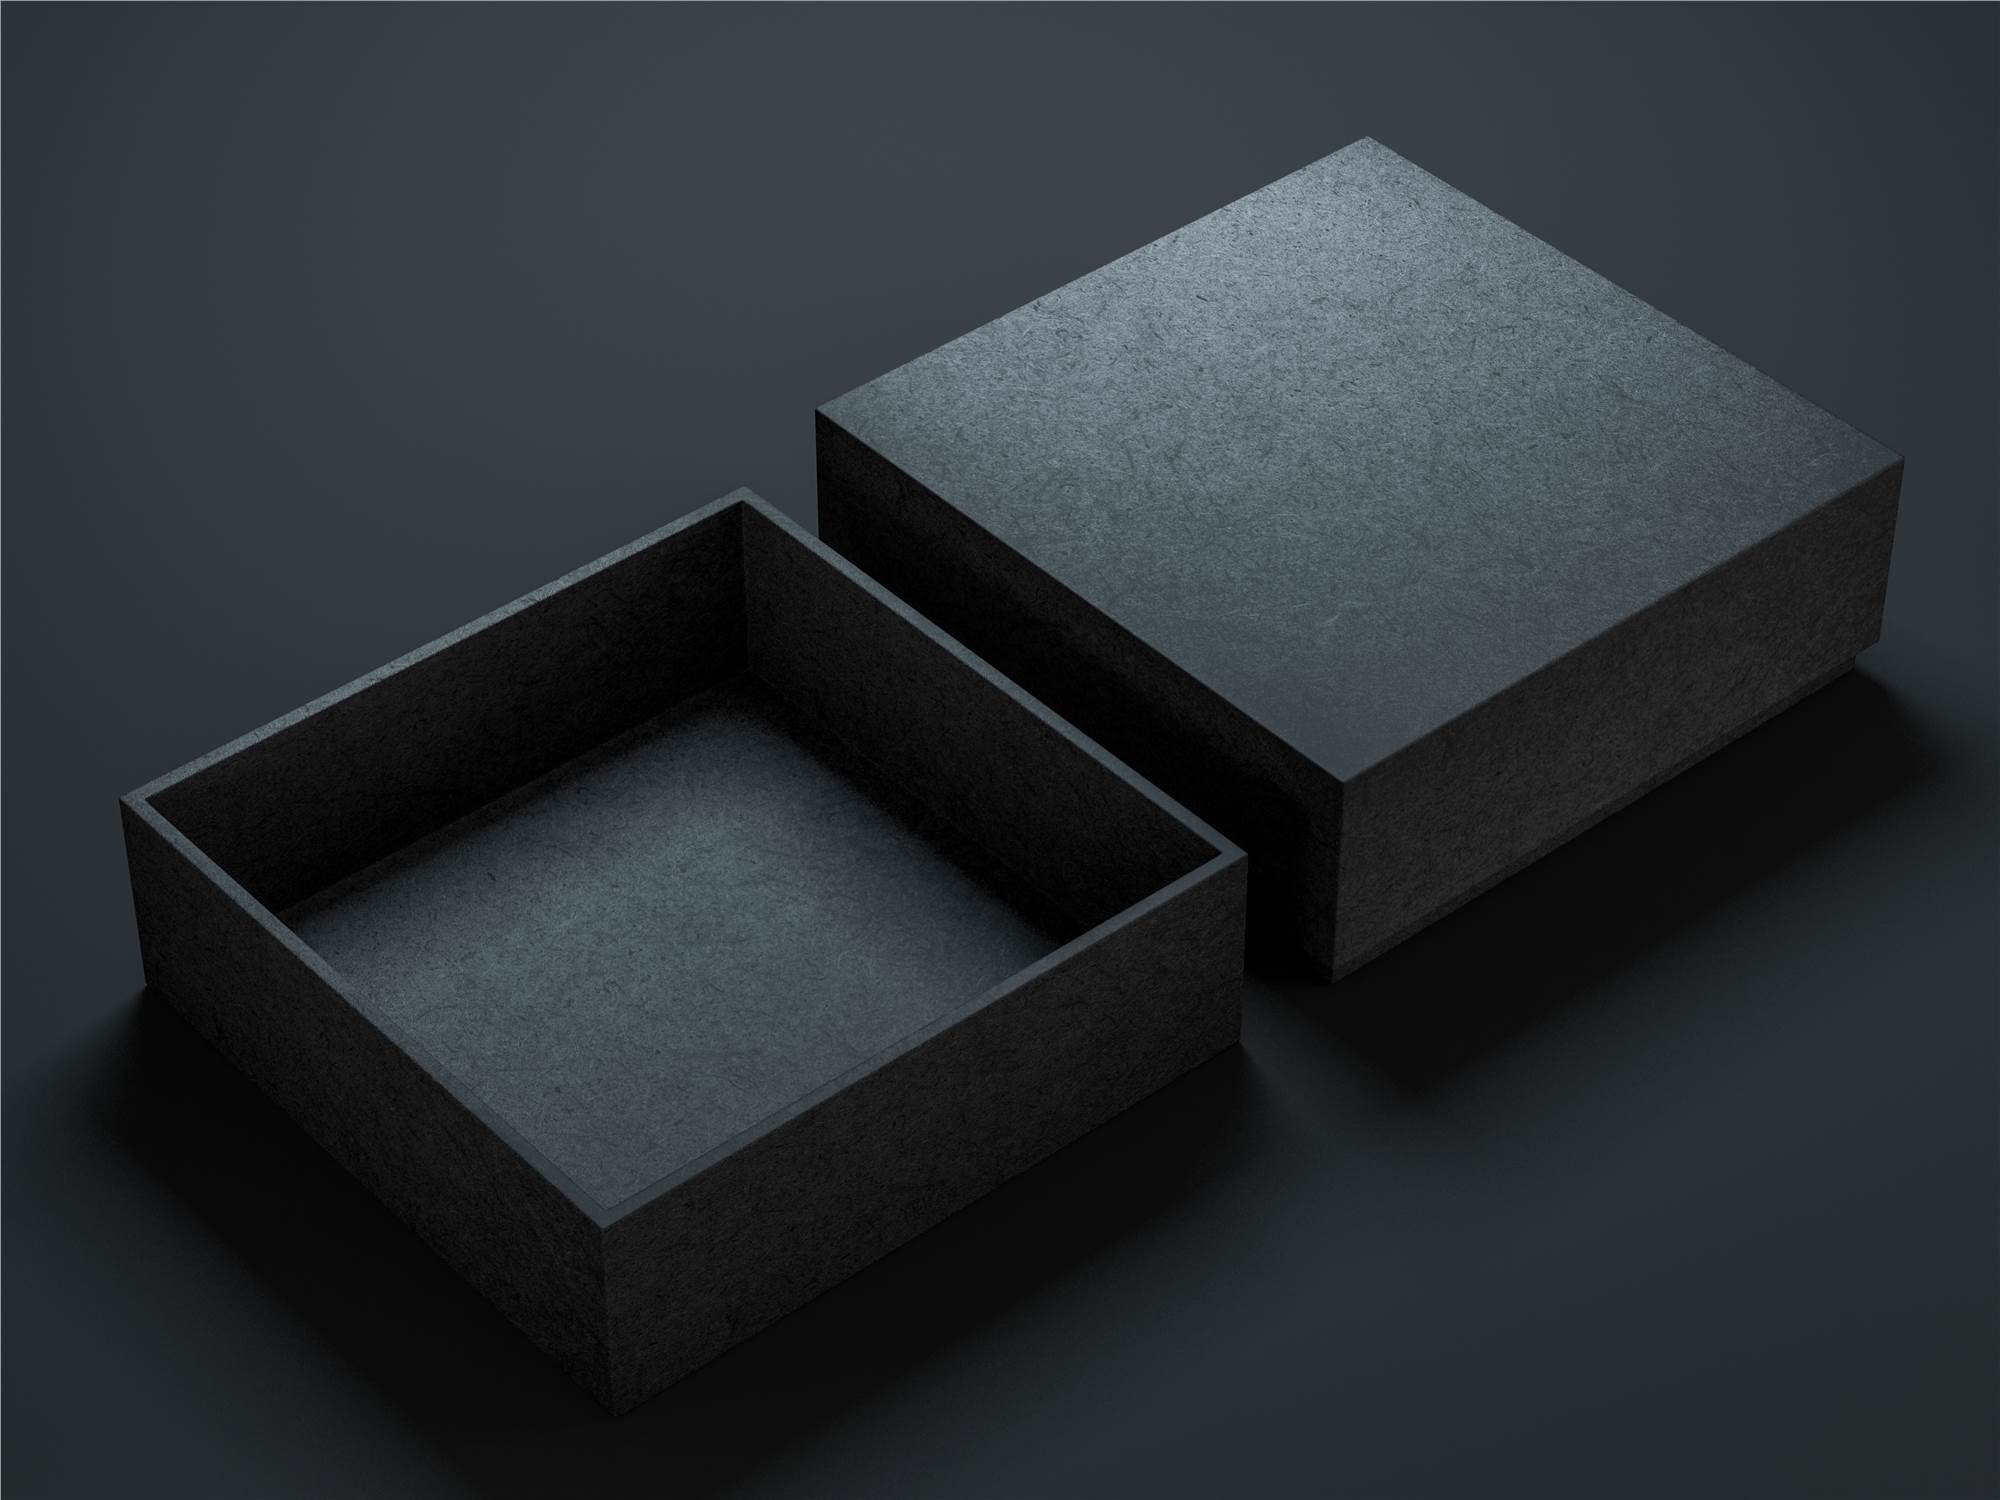 Two-Piece Box - Black